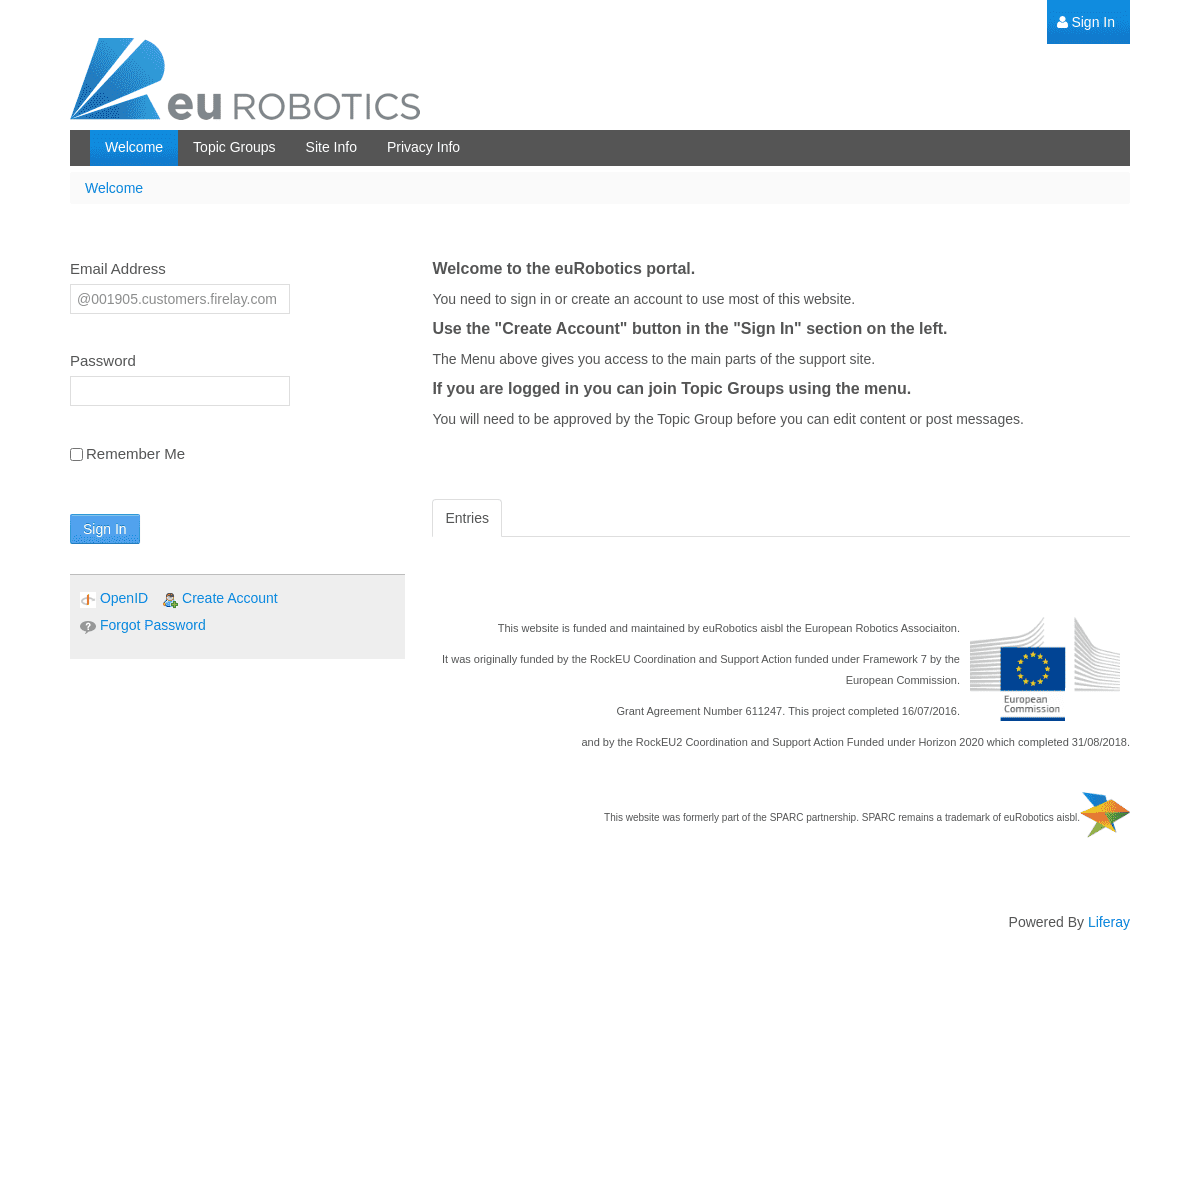 A complete backup of https://sparc-robotics-portal.eu